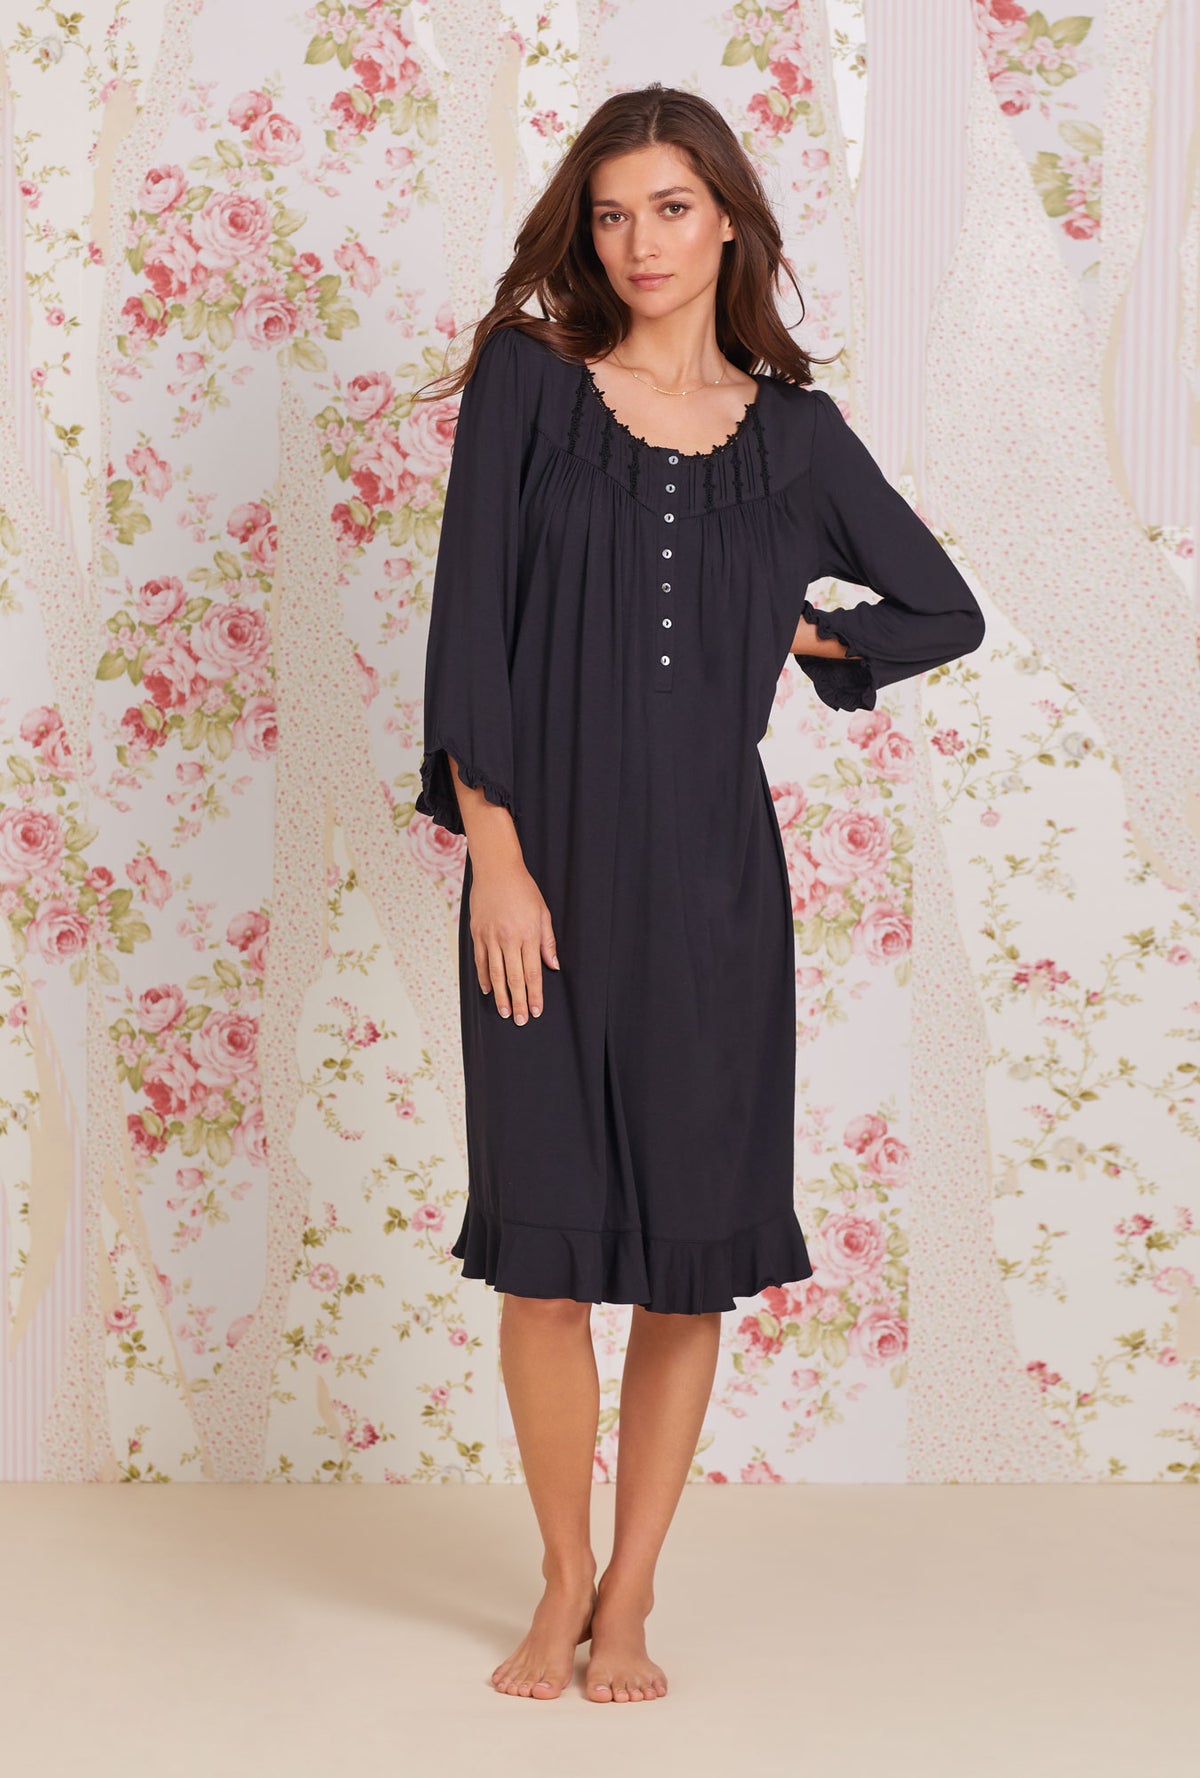 Iconic Black Tencel™ Modal Long Sleeve Waltz Nightgown - Eileen West